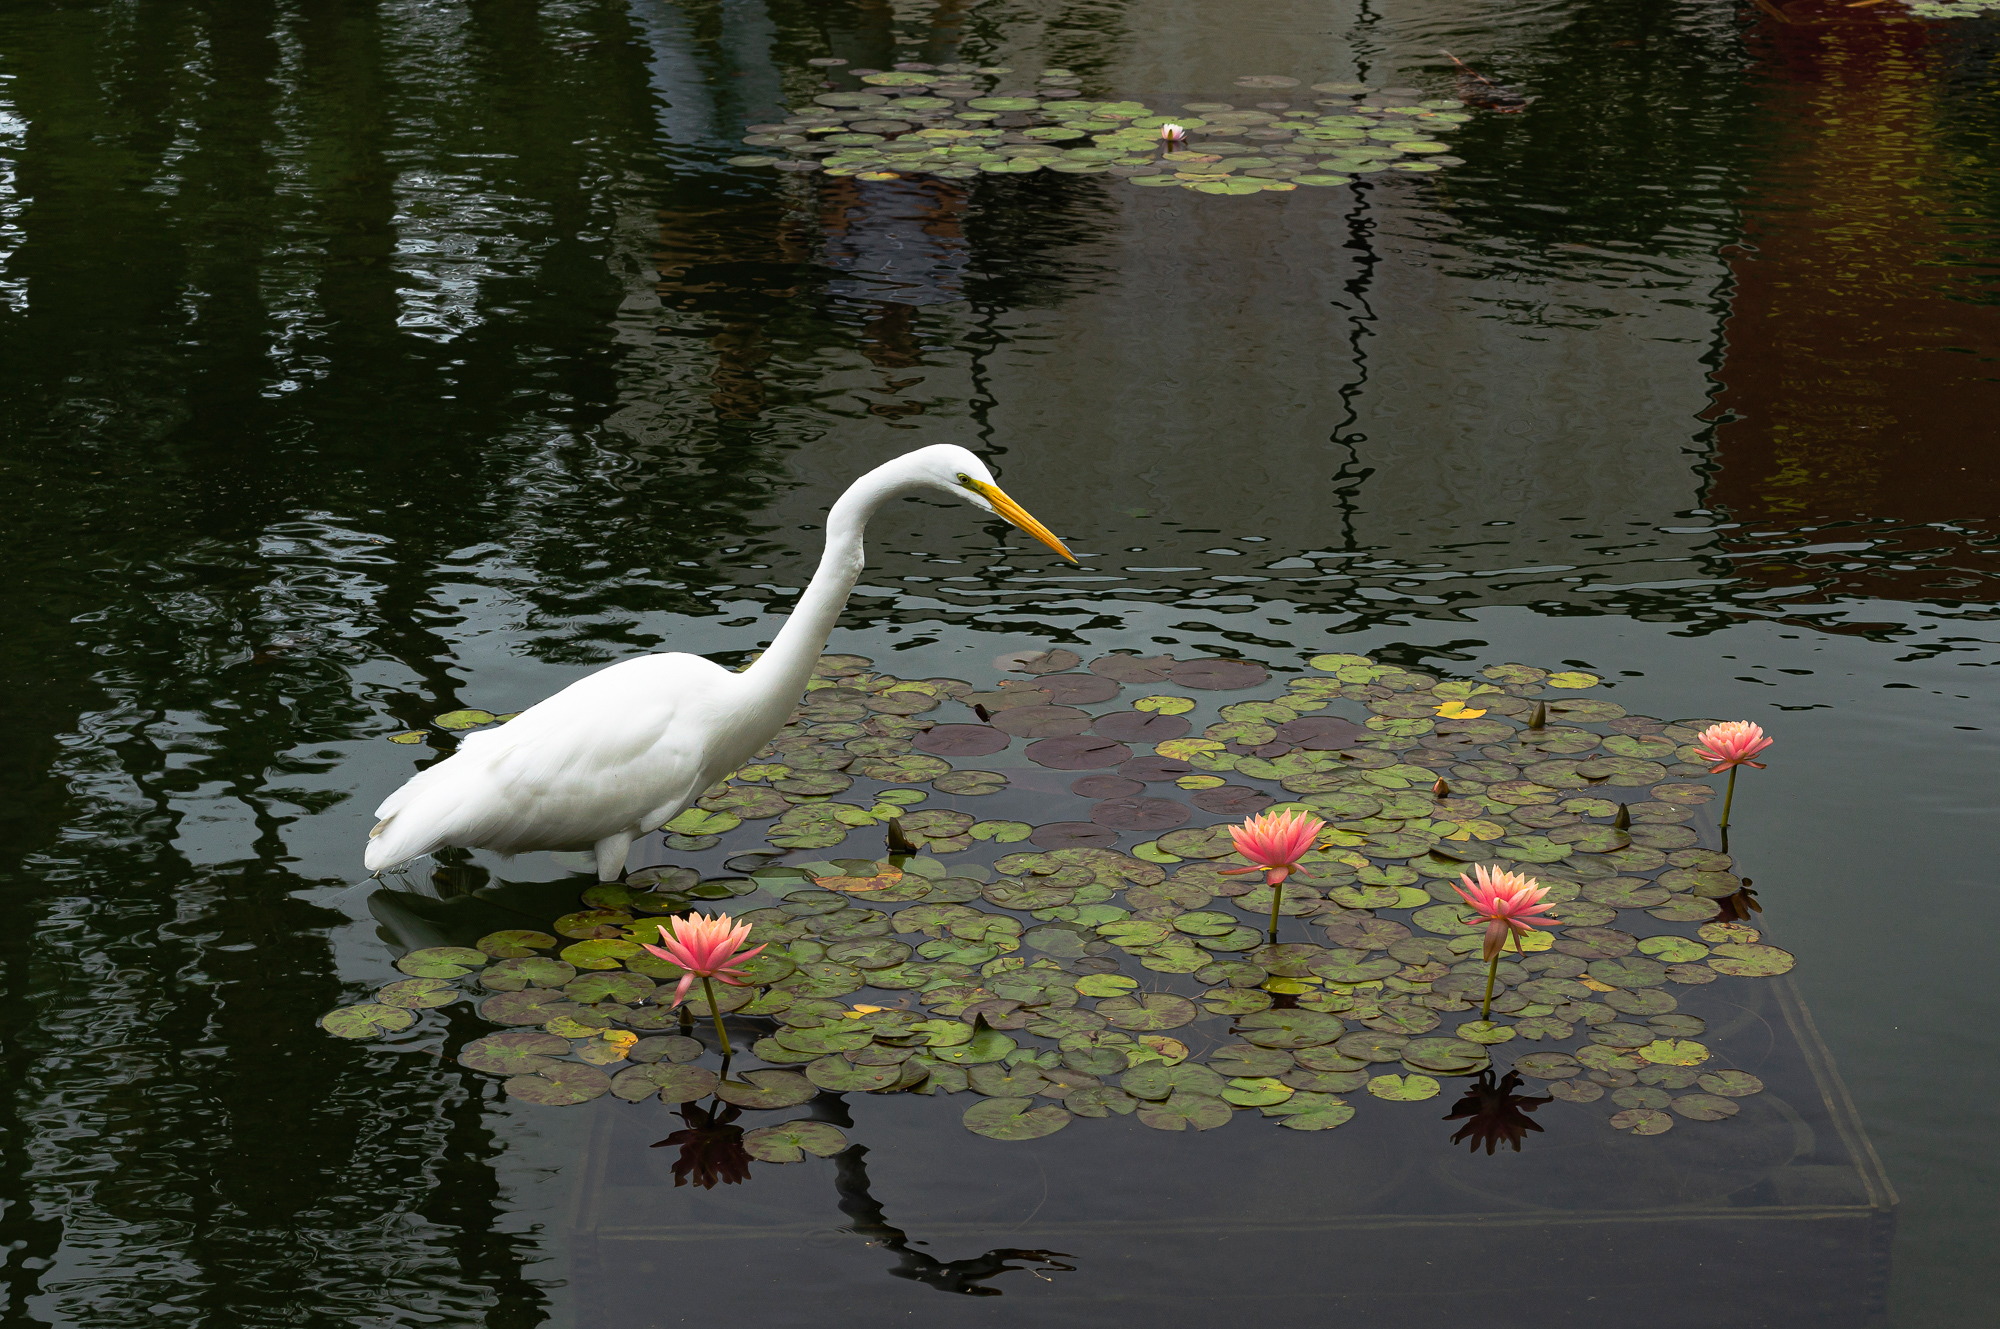 “Wild Egret Fishing a Koi Pond”, 2015, Balboa Park, San Diego